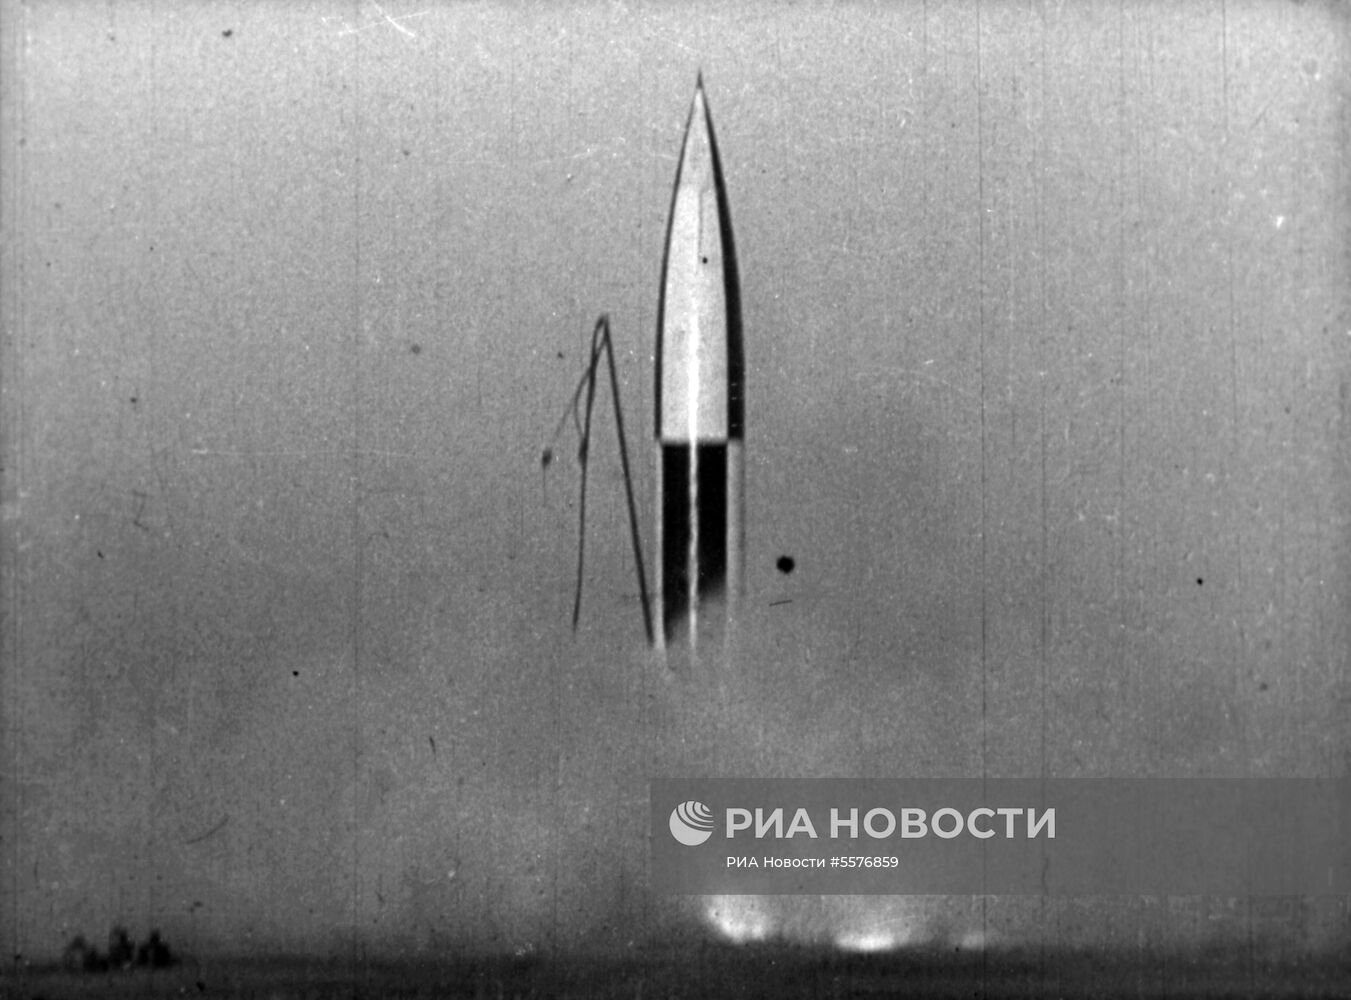 Кадр из документального фильма "Первые советские спутники Земли"